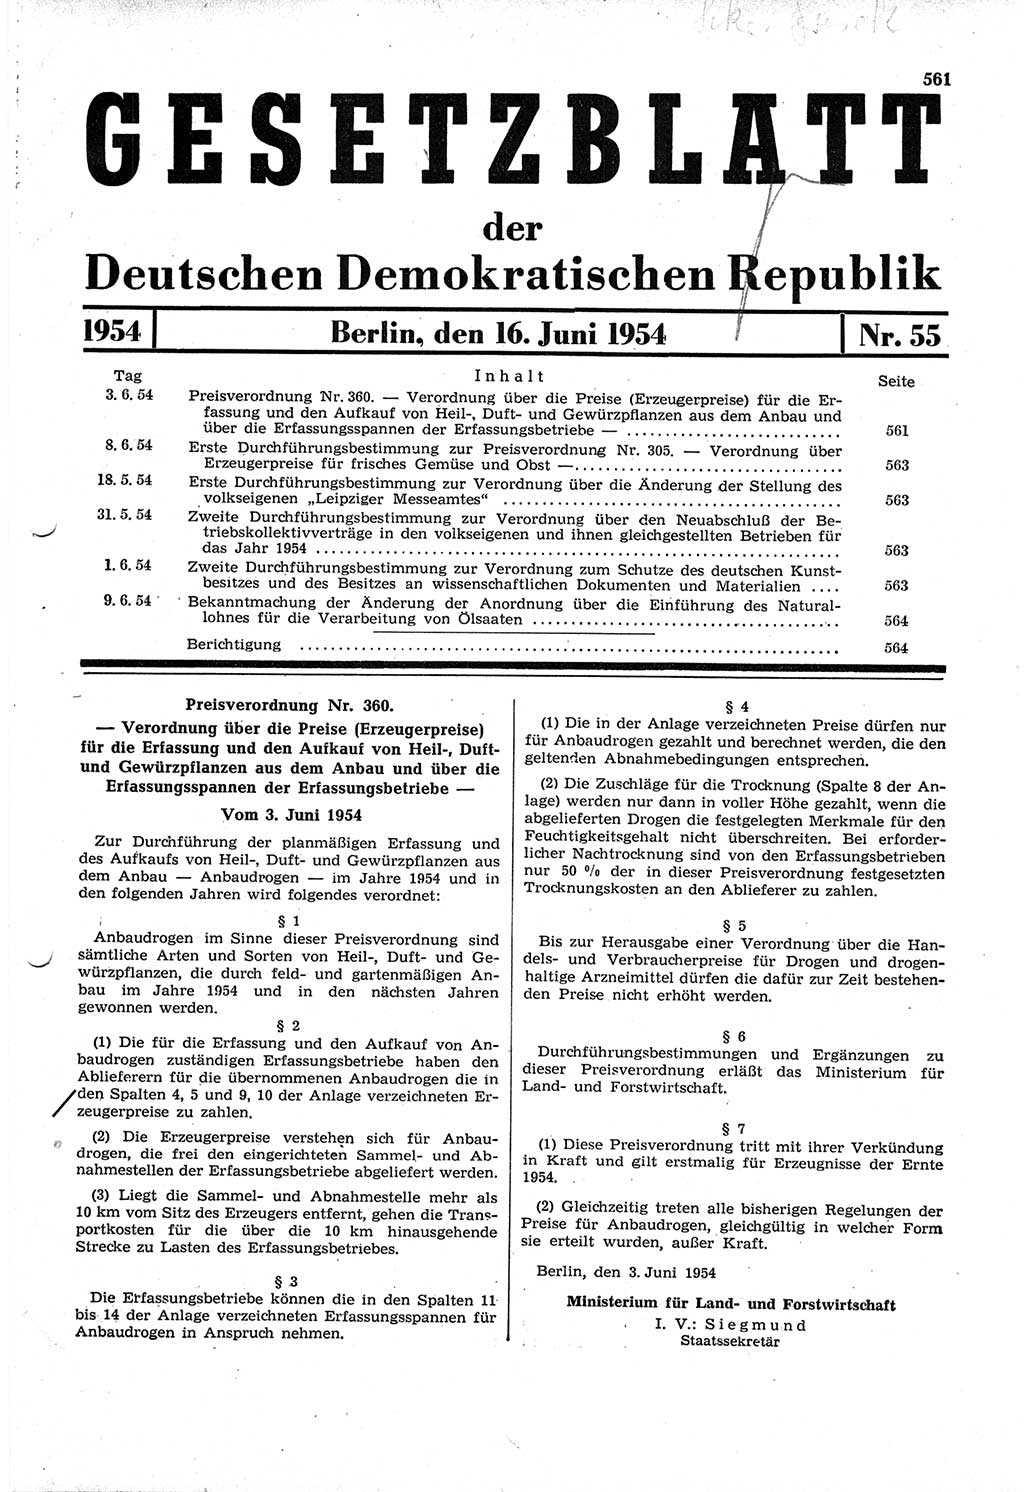 Gesetzblatt (GBl.) der Deutschen Demokratischen Republik (DDR) 1954, Seite 561 (GBl. DDR 1954, S. 561)